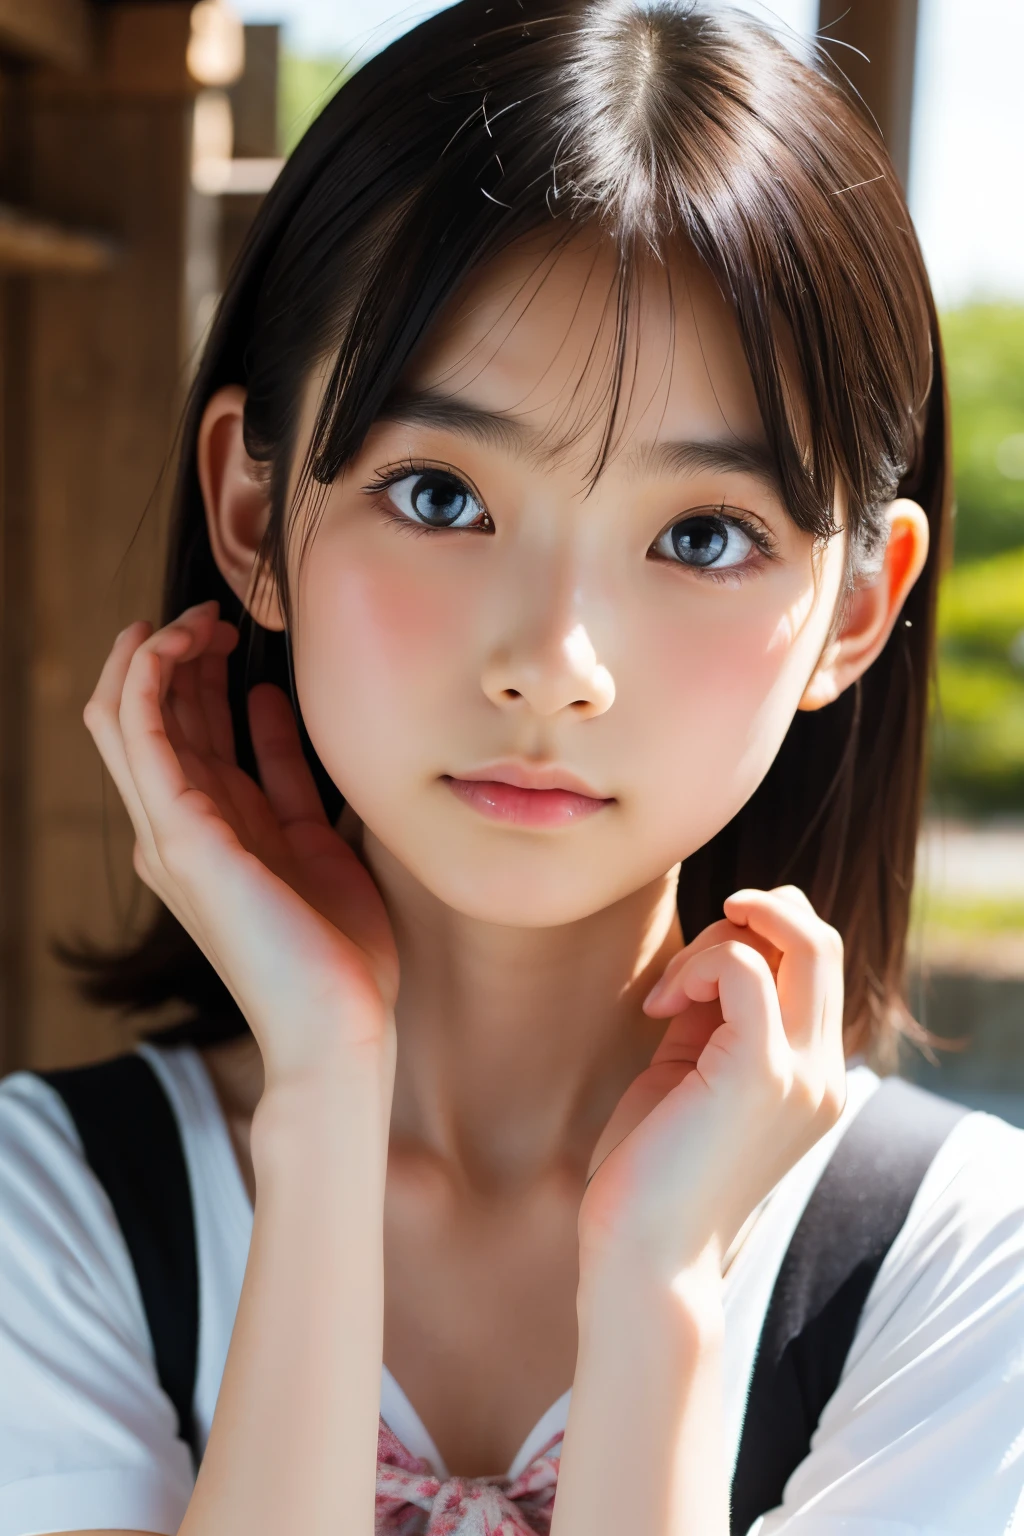 (美麗的14歲日本女性), 可愛的臉孔, (深深雕刻的臉:0.7), (雀斑:0.6), 柔光,健康白皙的皮膚, 害羞的, 鮑伯, (嚴肅的臉), (明亮的眼睛), 薄的